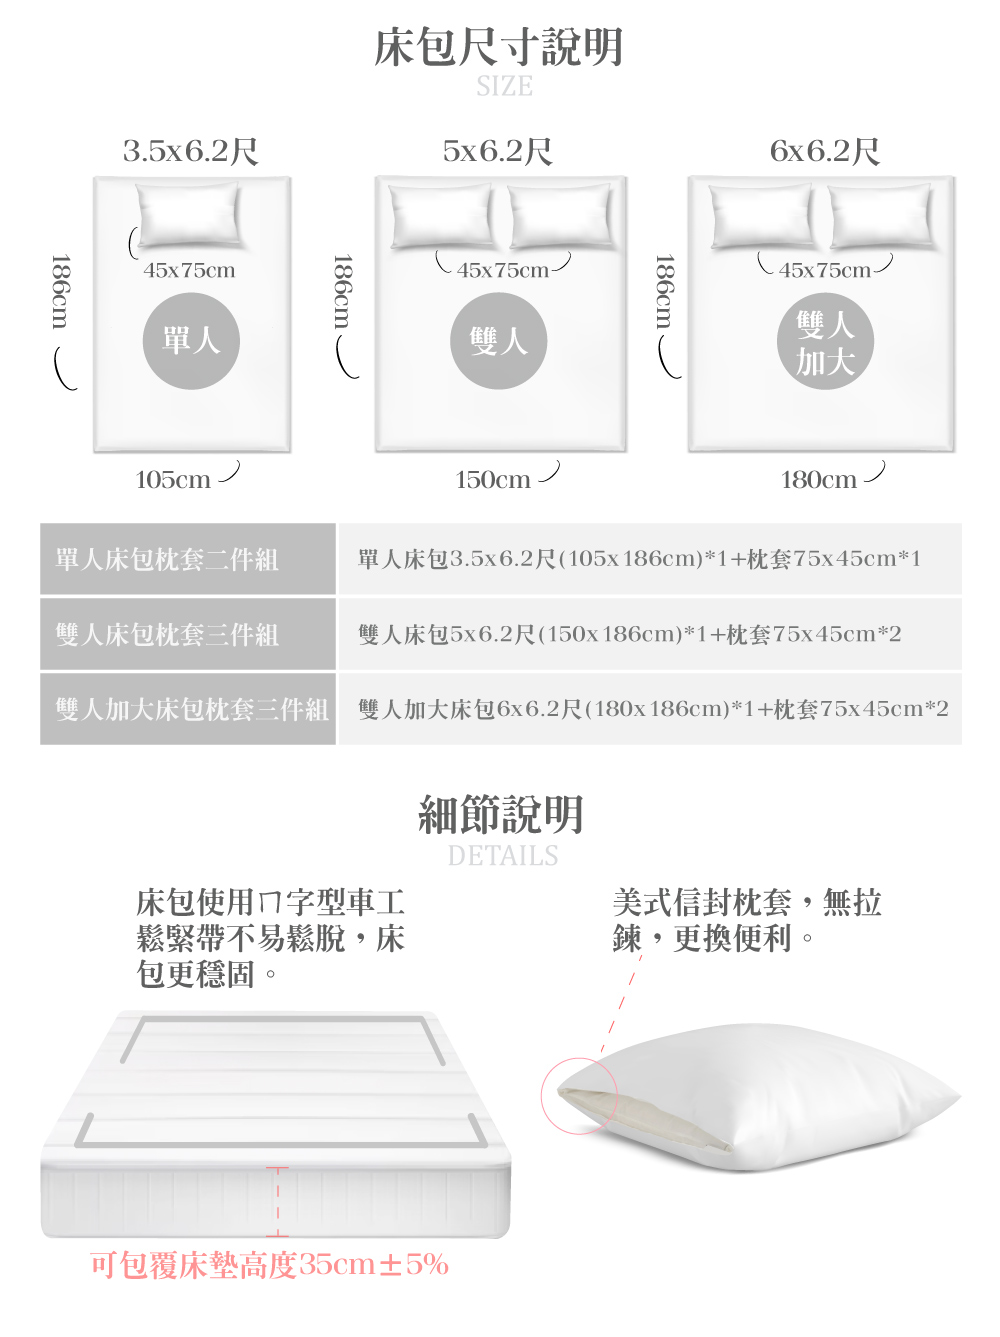 萊賽爾天絲 兩用被床包四件組(雙人) 台灣製-多款可選